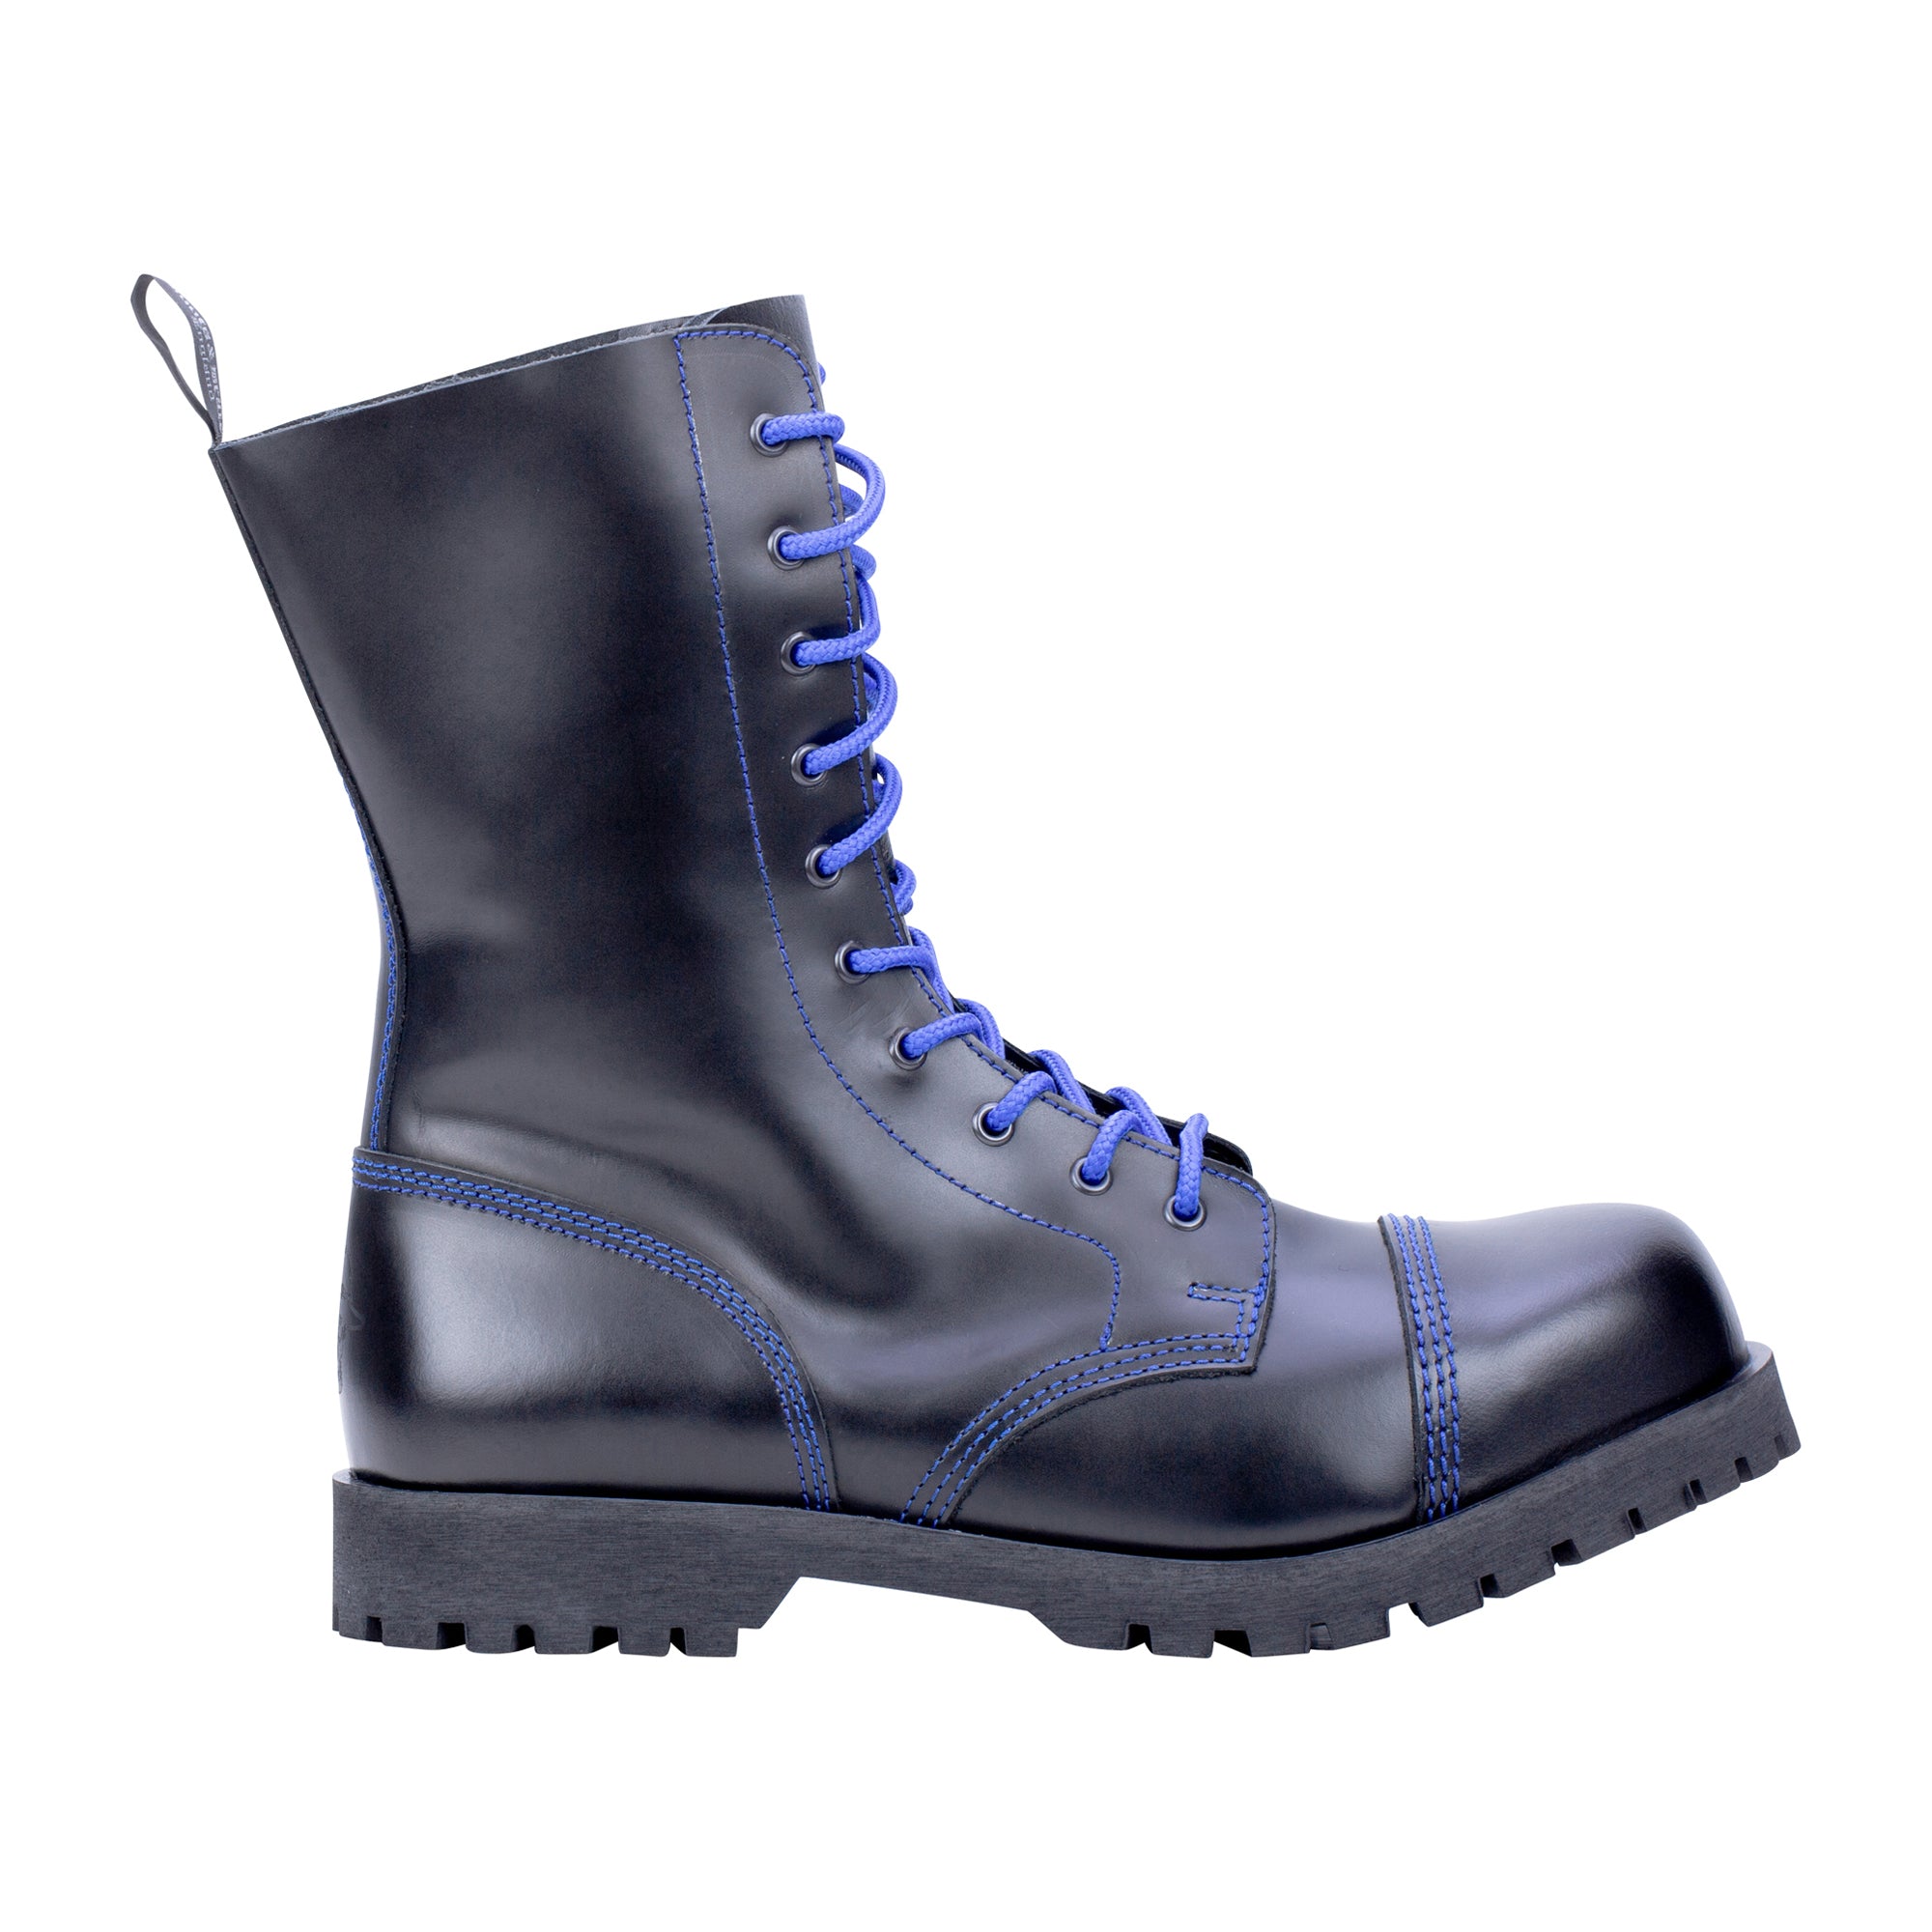 Boots & Braces Stiefel 10-Loch blau schwarz